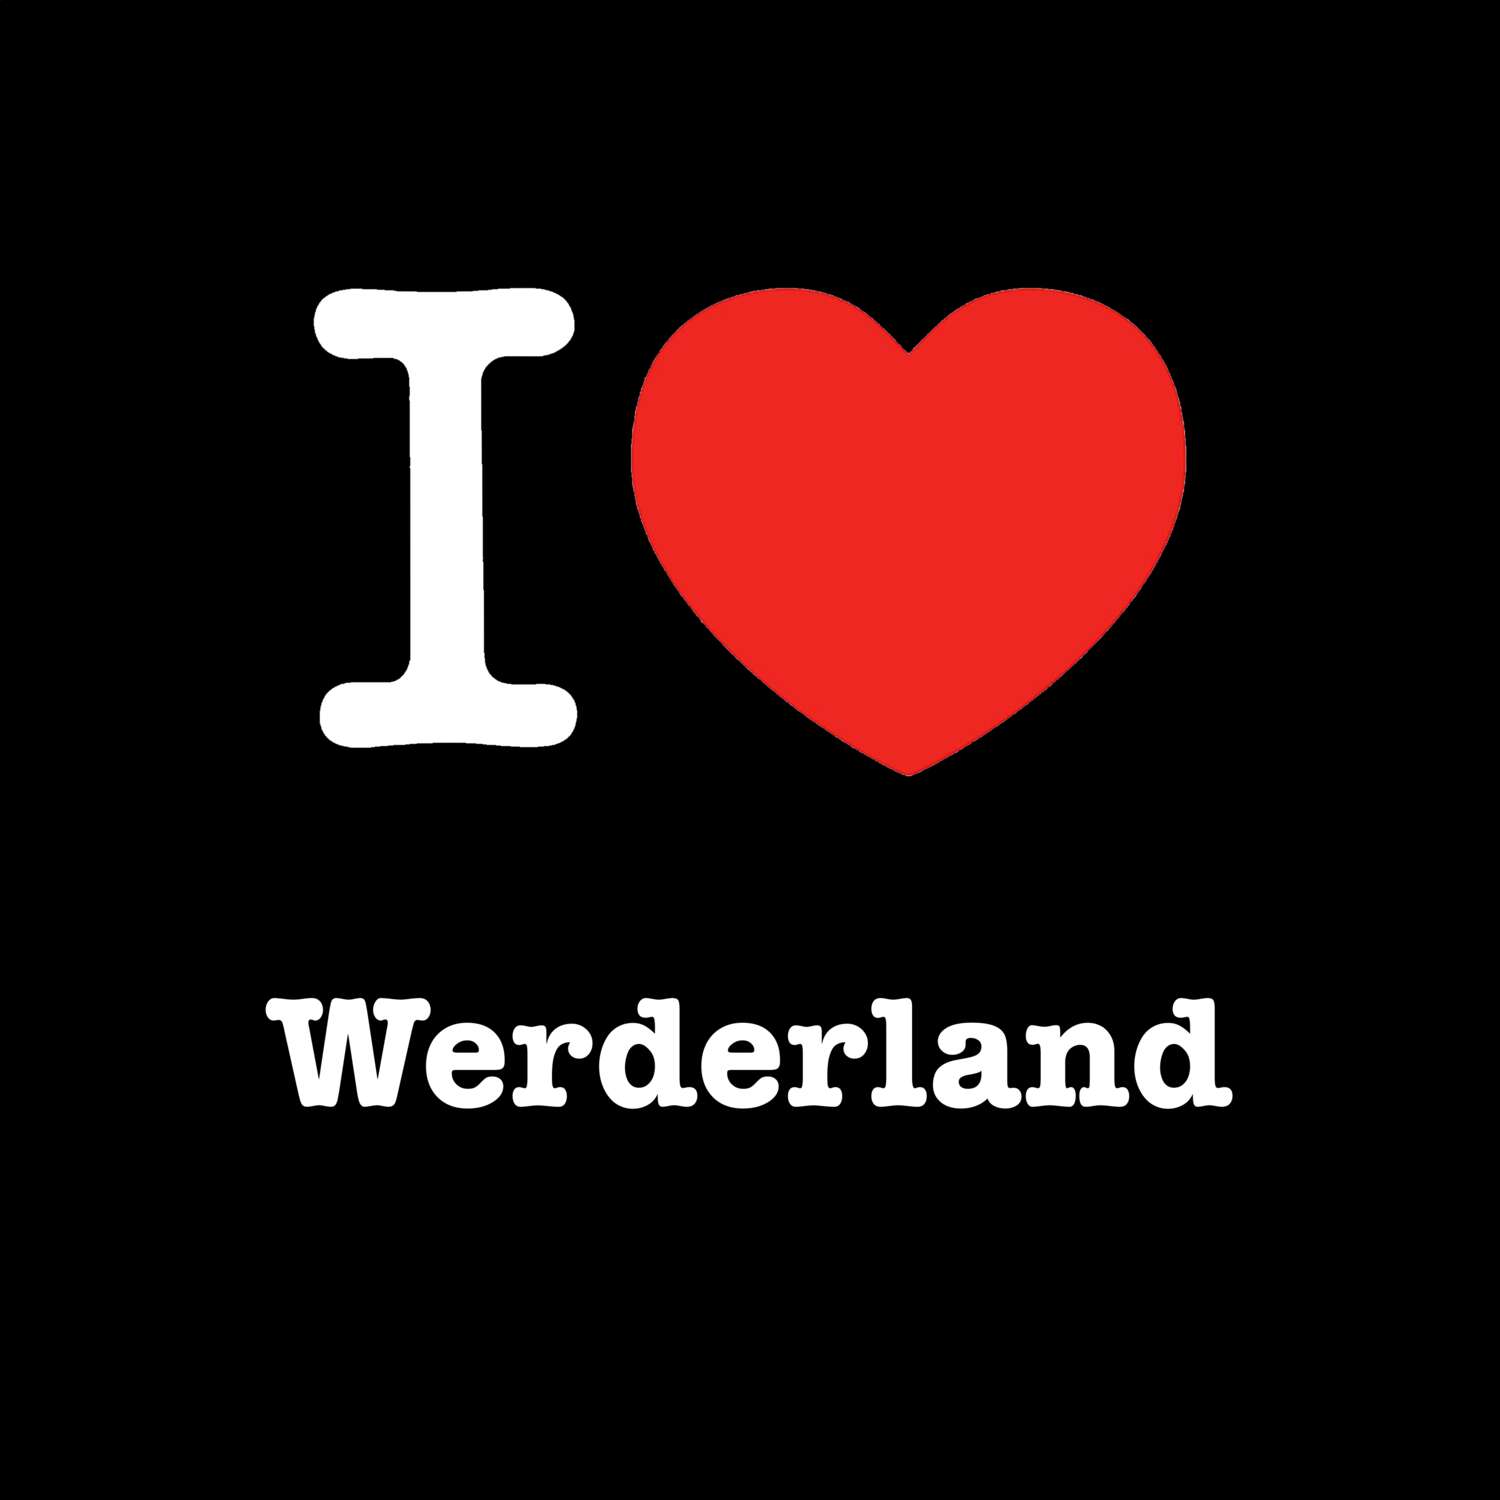 Werderland T-Shirt »I love«